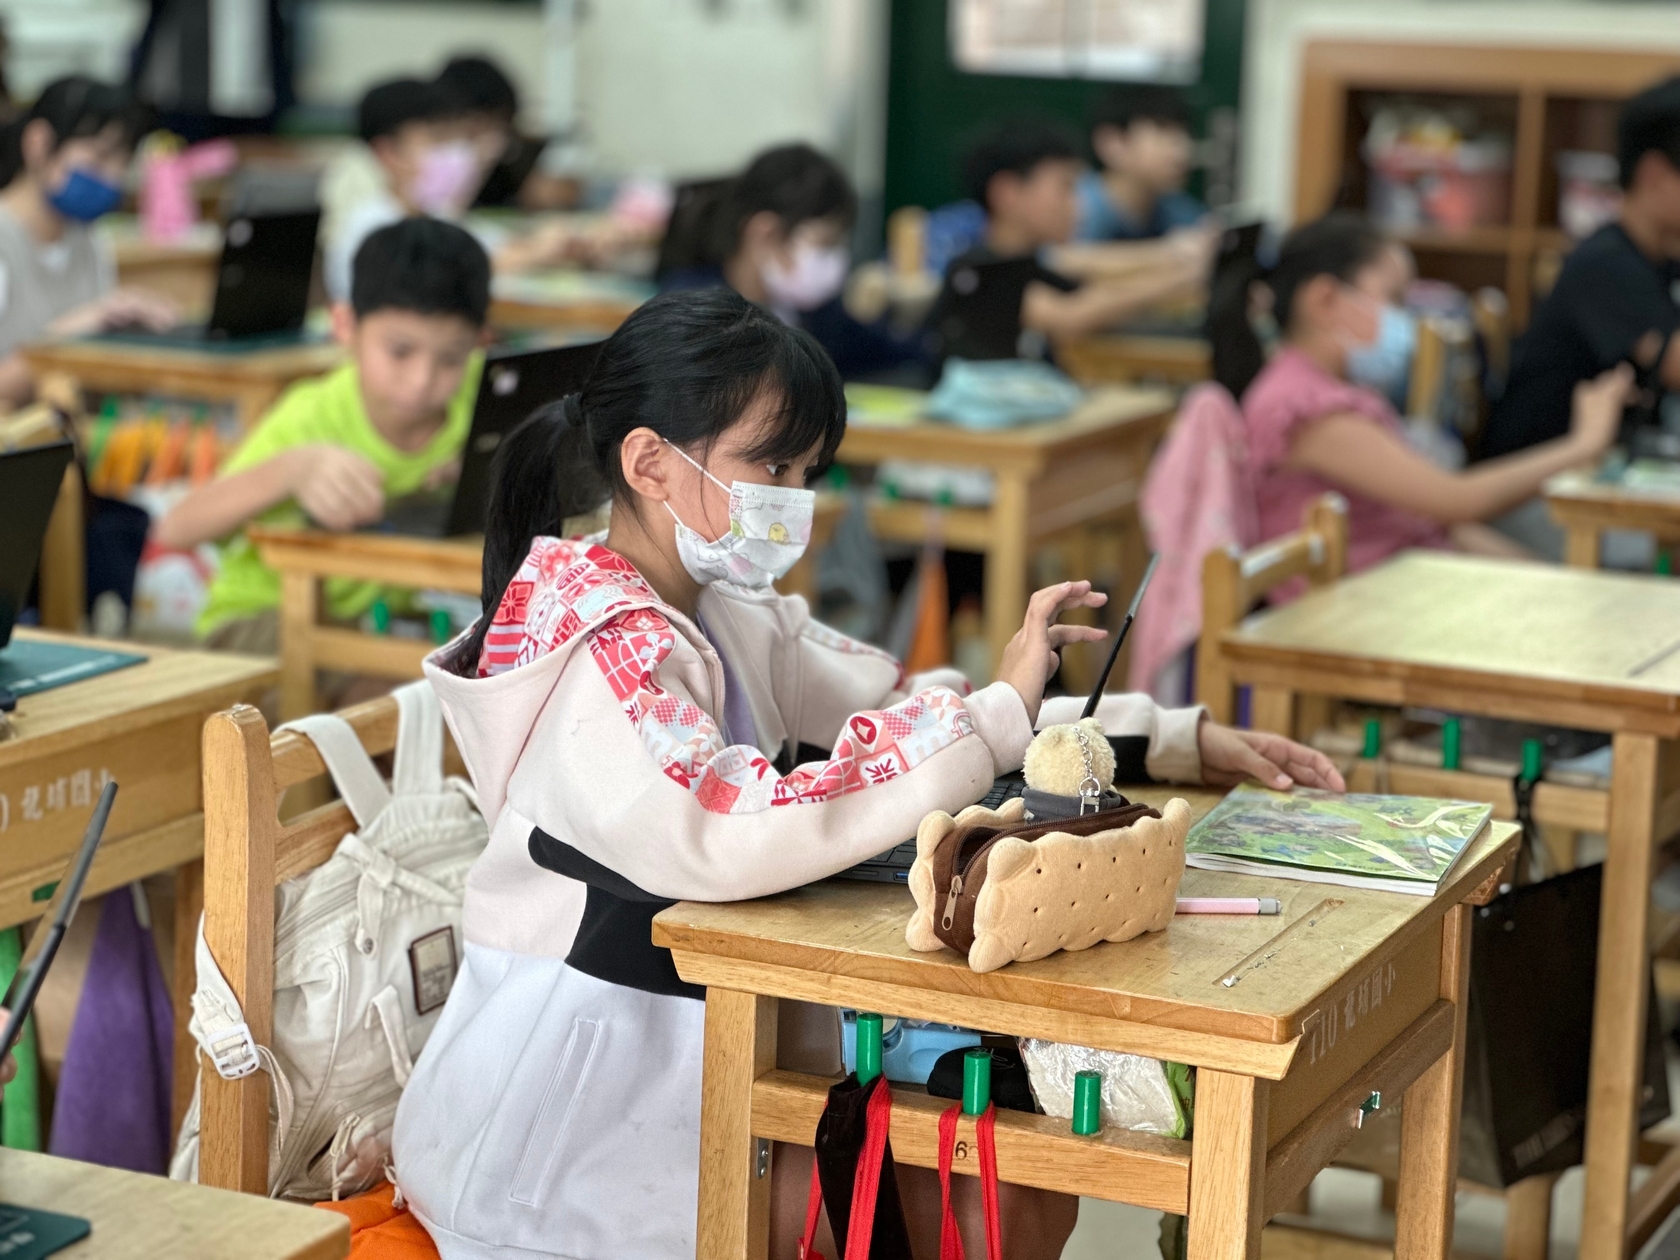 龍埔國小學生搭配平板和「親師生平臺」豐富學習資源進行自主學習